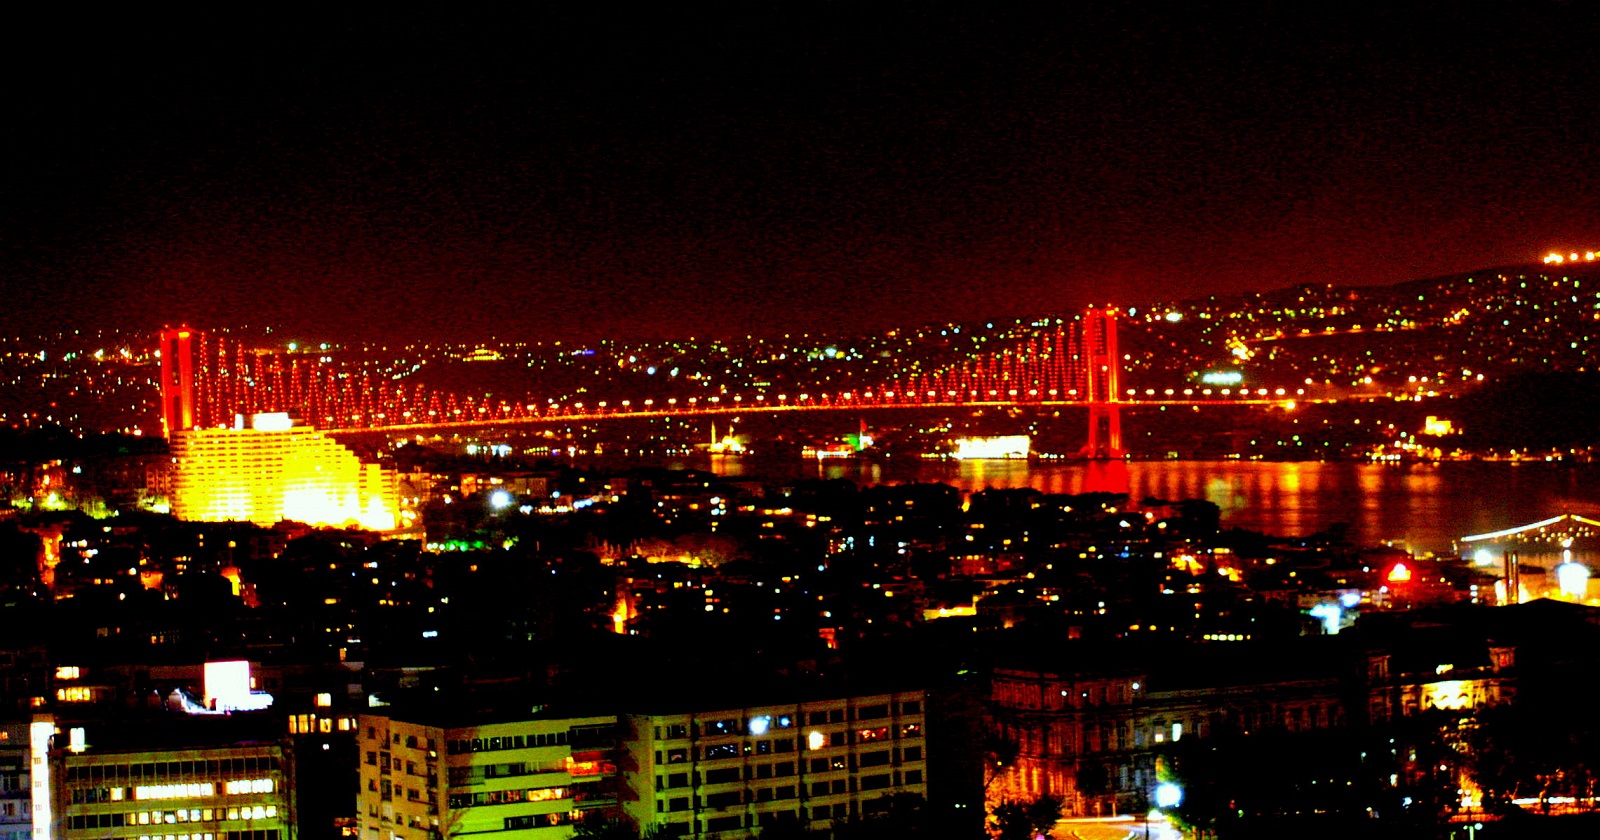 İstanbul boğazı 15 temmuz şehitler köprüsü gece manzara resmi